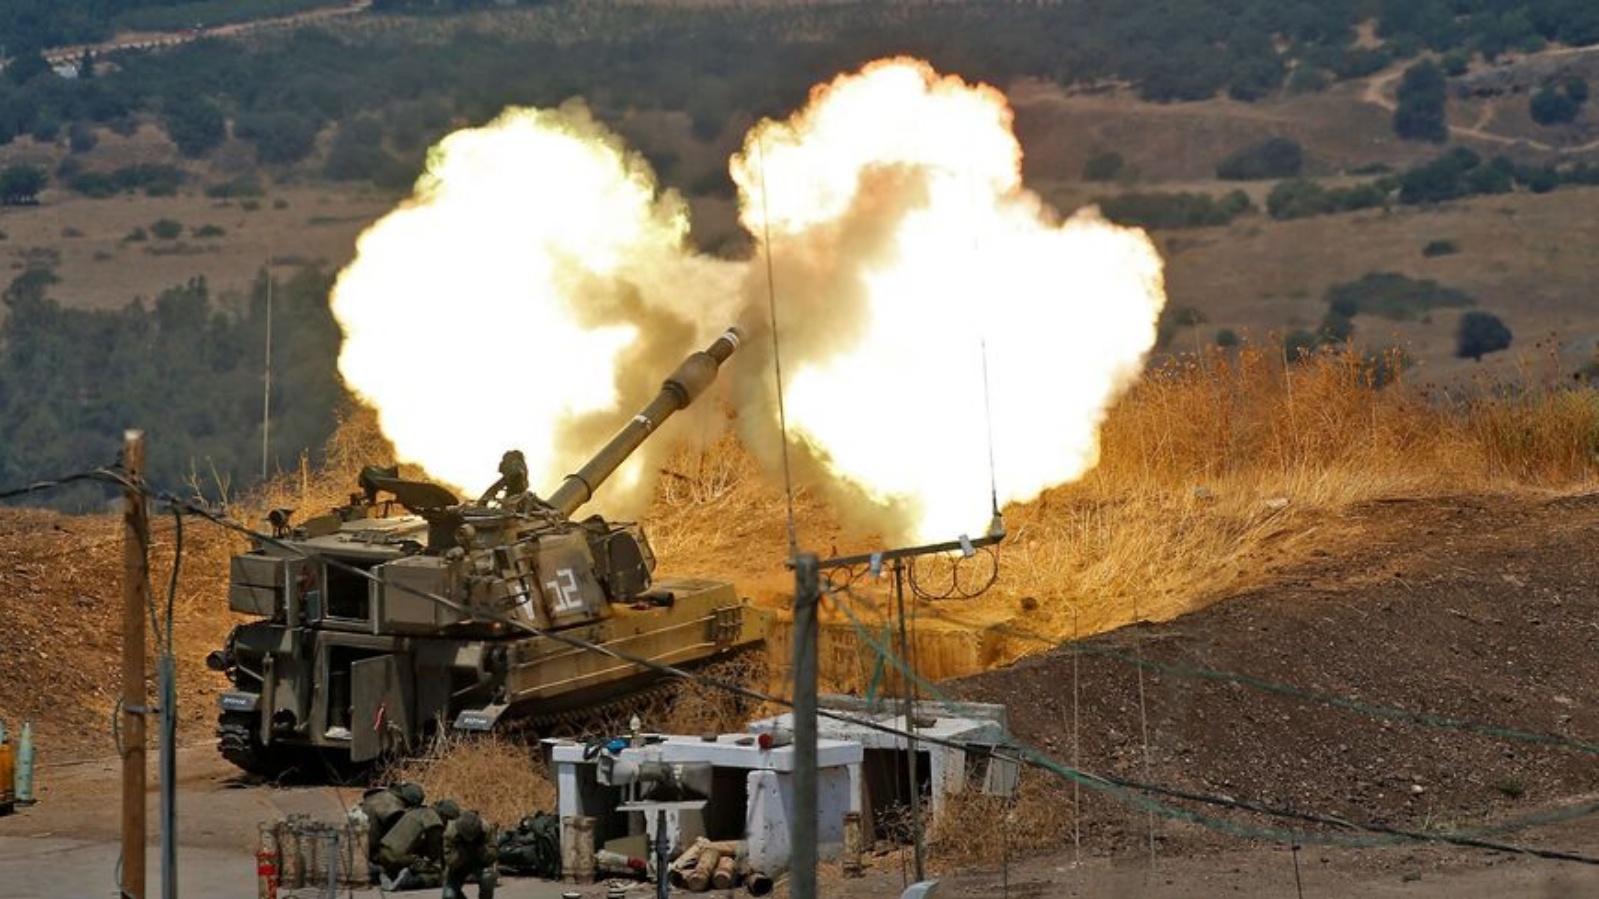 مدافع هاوتزر ذاتية الدفع أطلقت باتجاه لبنان من موقع بالقرب من بلدة كريات شمونة شمال إسرائيل بعد إطلاق صواريخ من الجانب اللبناني من الحدود (أرشيفية)